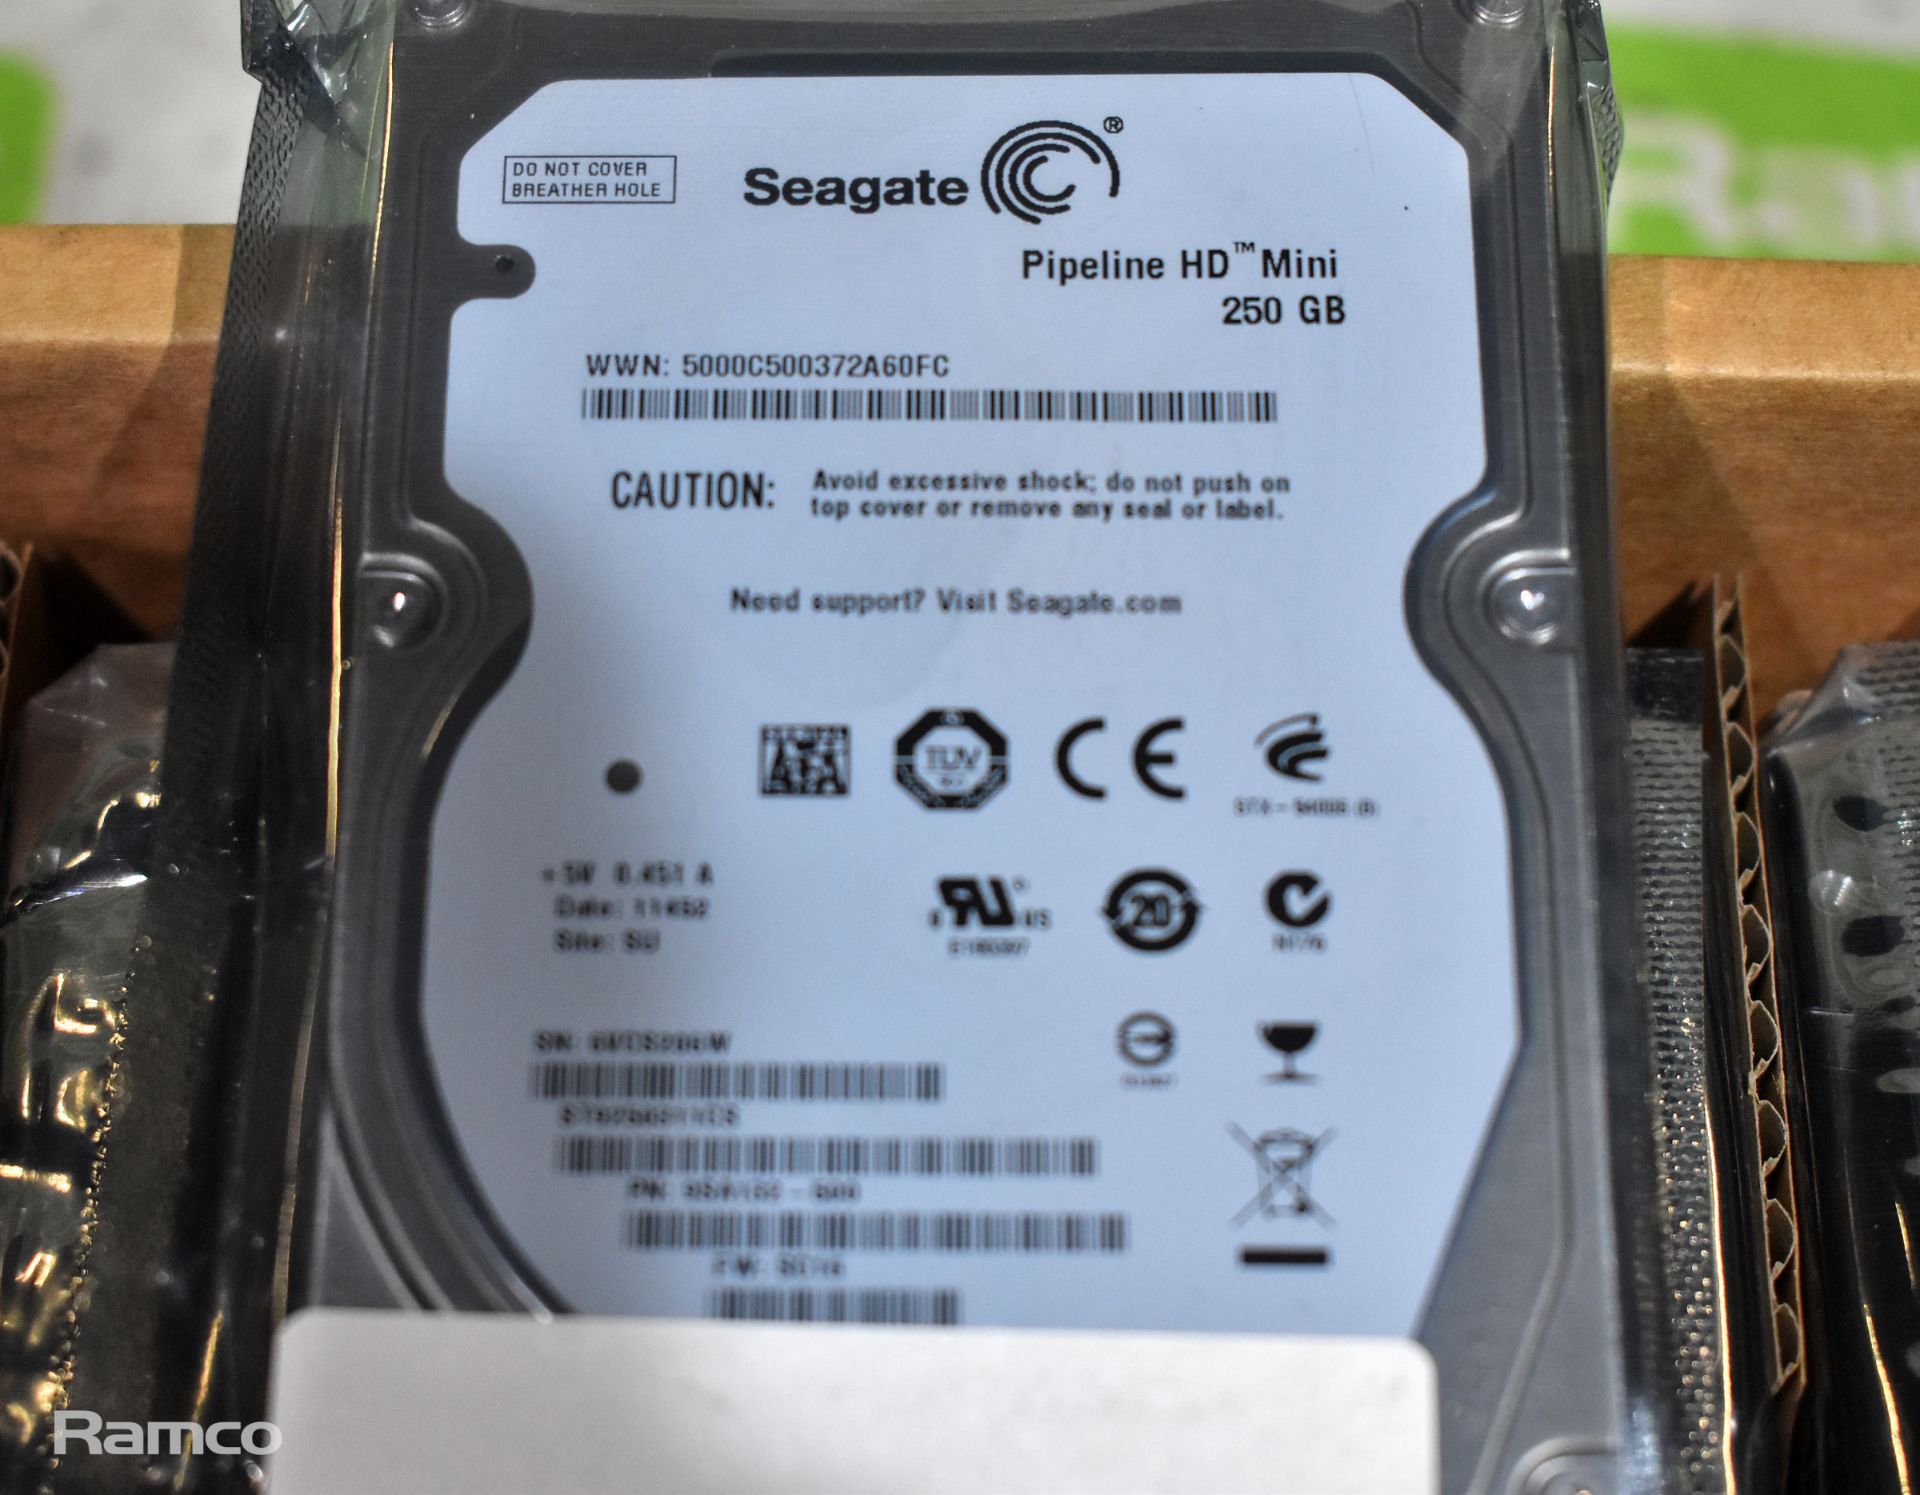 20x Seagate Pipeline HD mini 250GB hard drives - Bild 2 aus 3